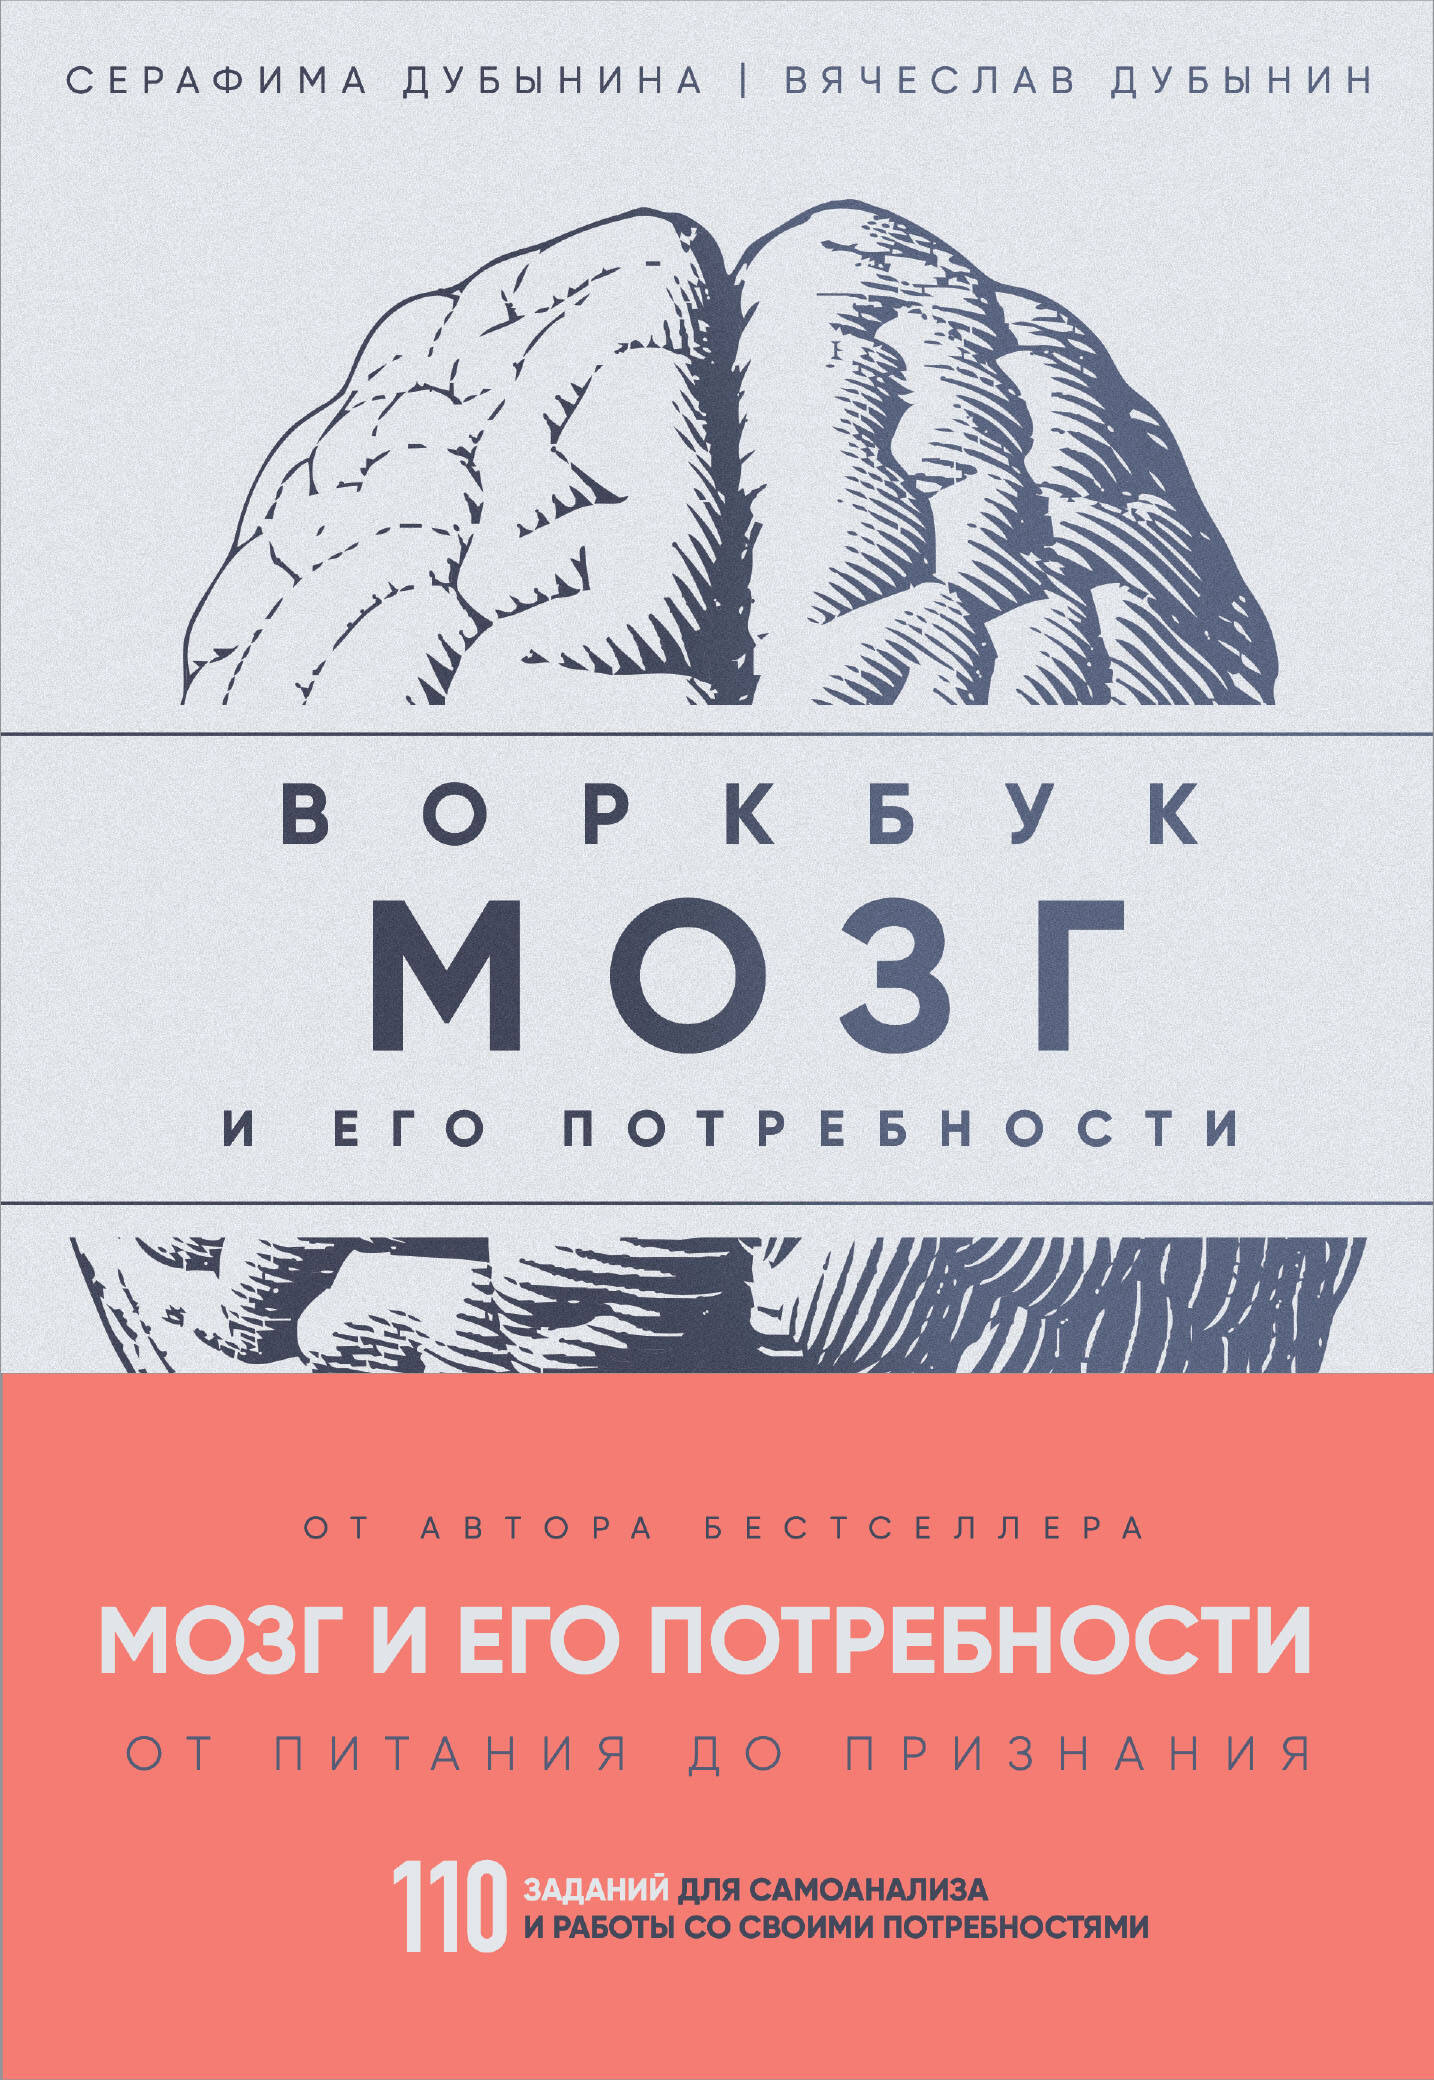  книга Мозг и его потребности: воркбук. 110 заданий для самоанализа и работы со своими потребностями